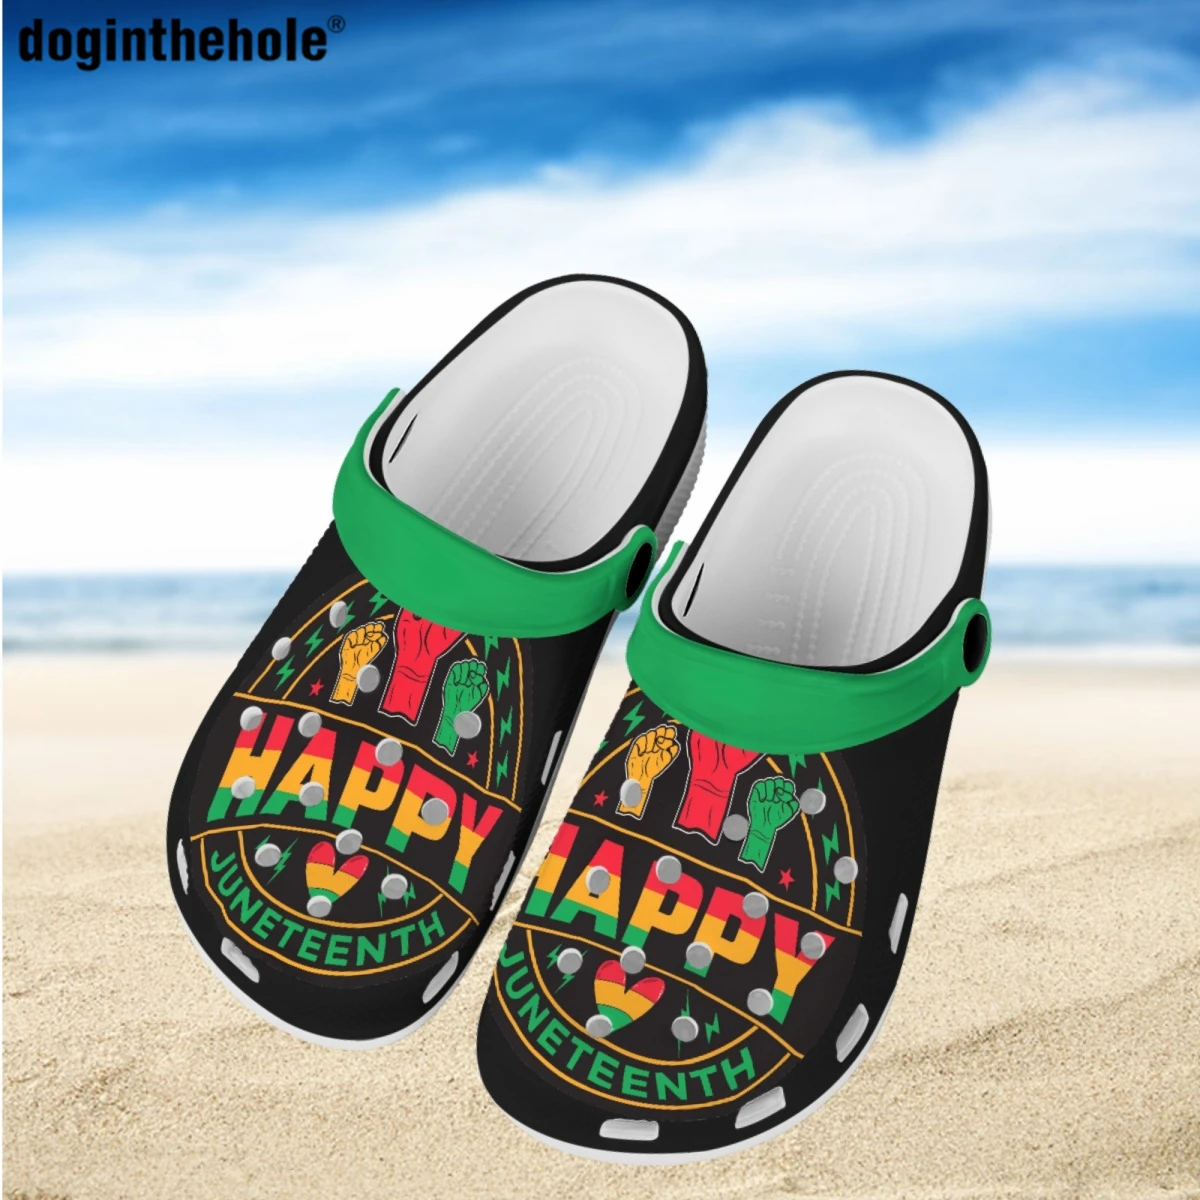 

Doginthehole счастливого июня женские туфли с отверстиями Летние Новые легкие дышащие тапочки мужские уличные пляжные сандалии садовые Сабо